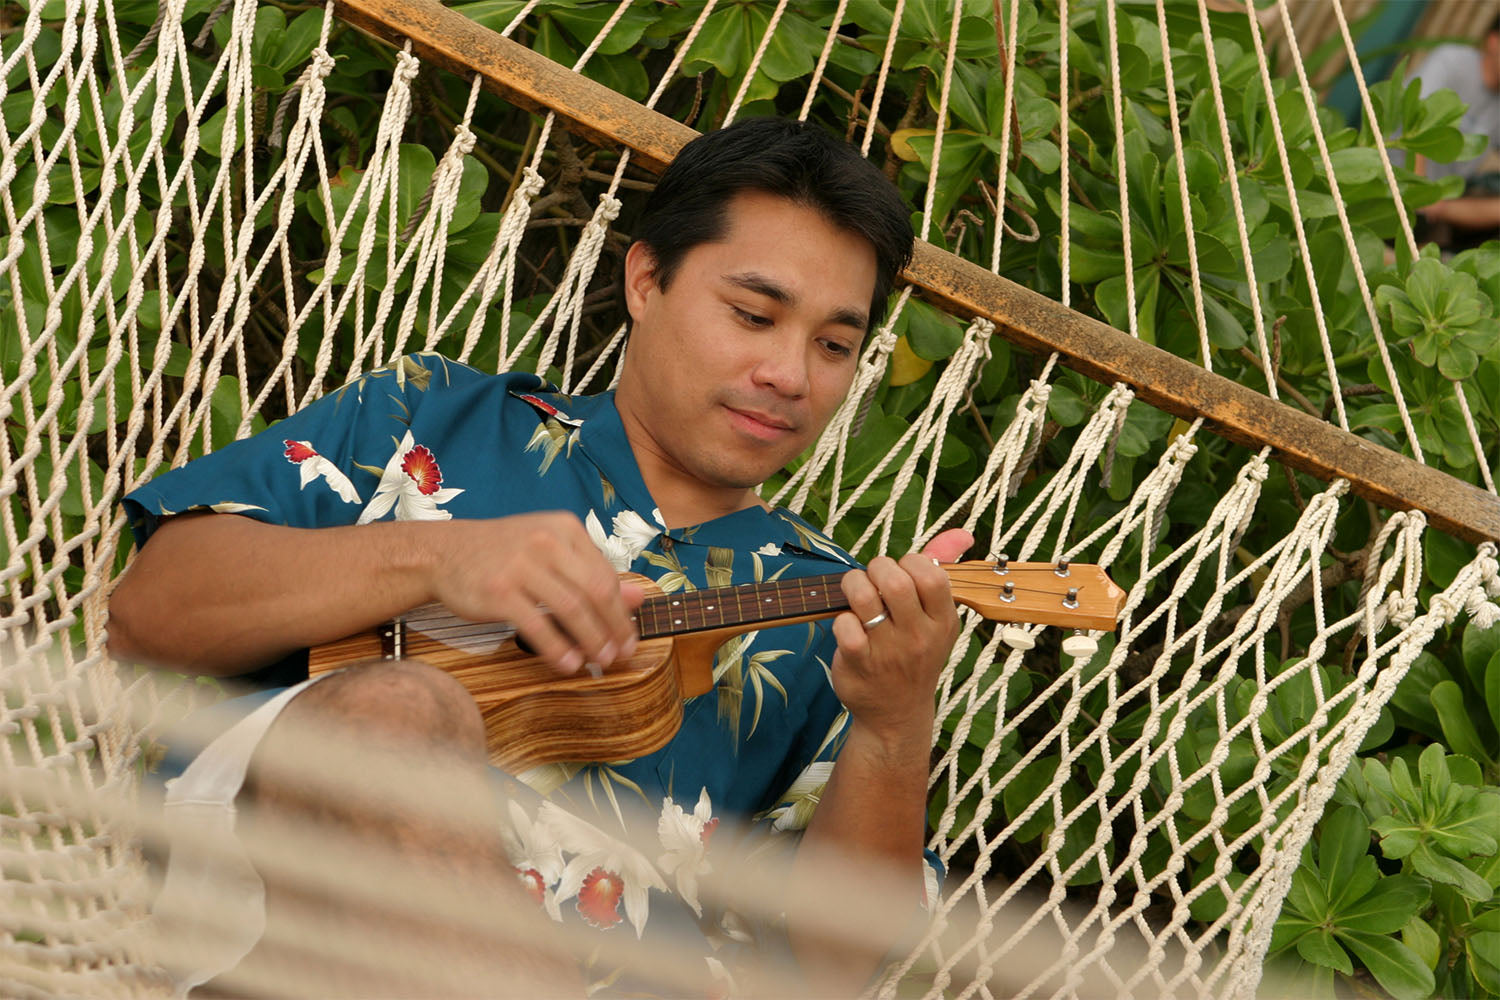 relaxing in an Aloha shirt with an ukulele